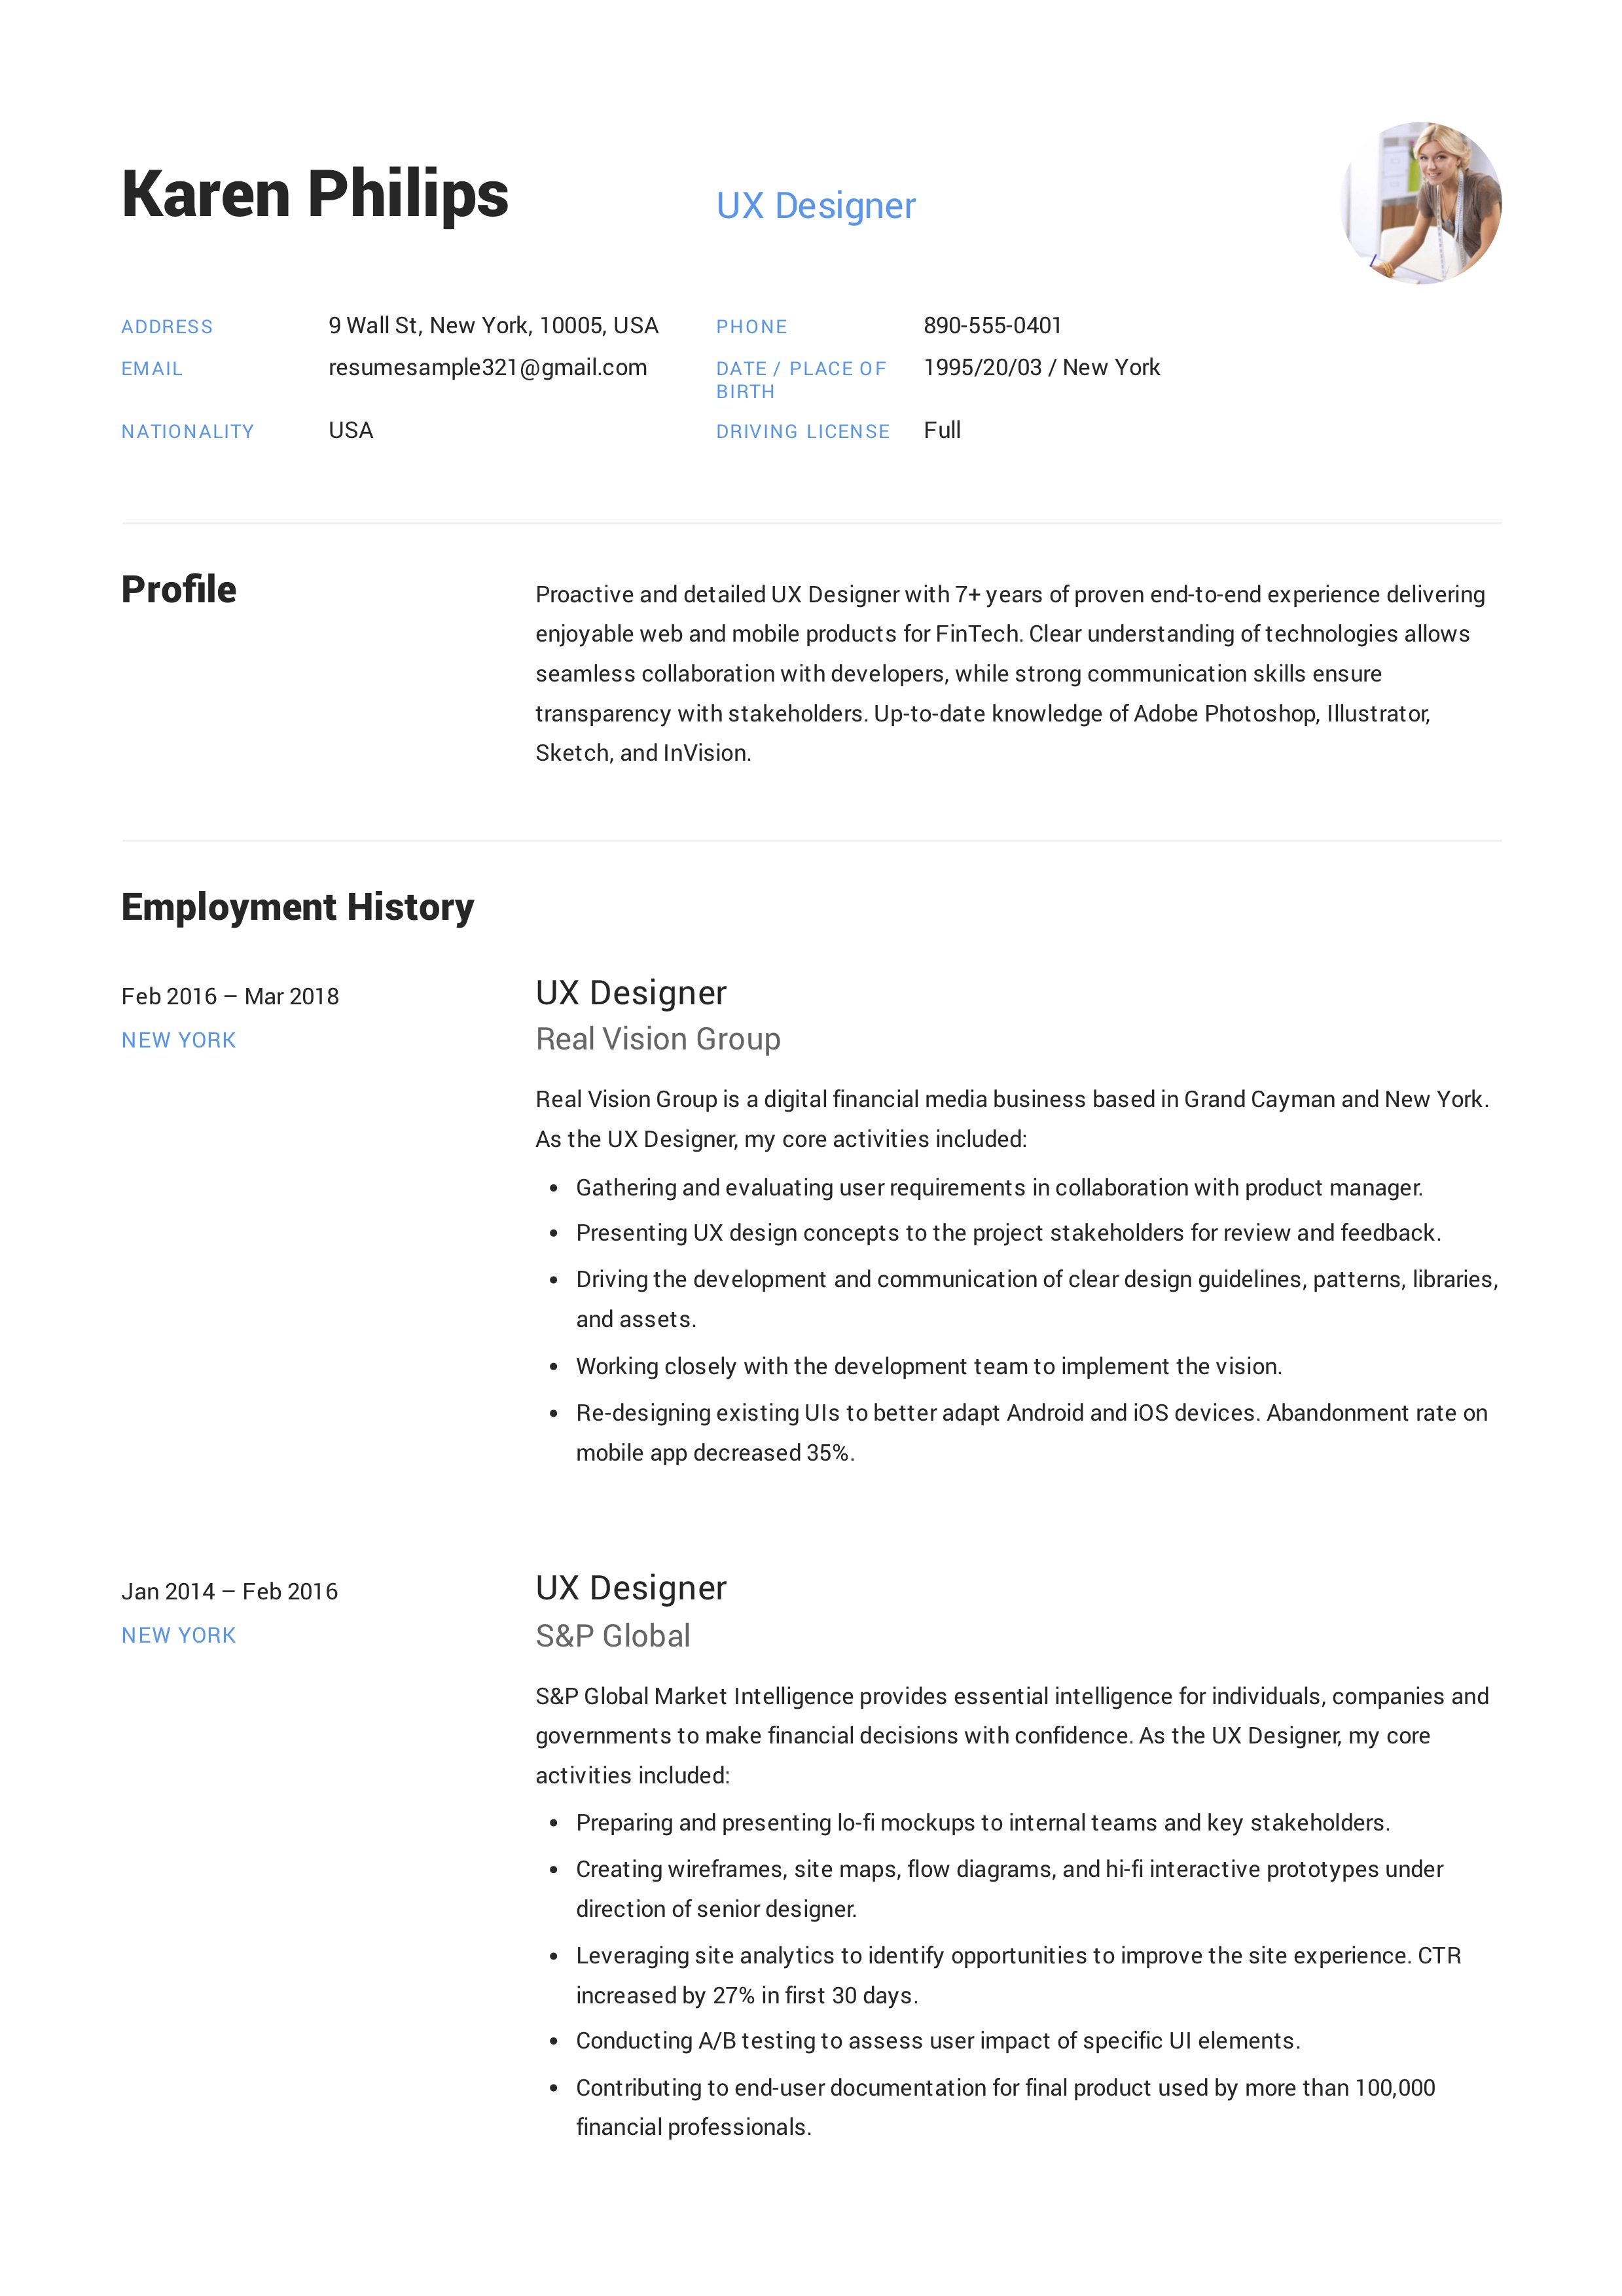 UX Designer Resume Sample – Karen Philips (9)